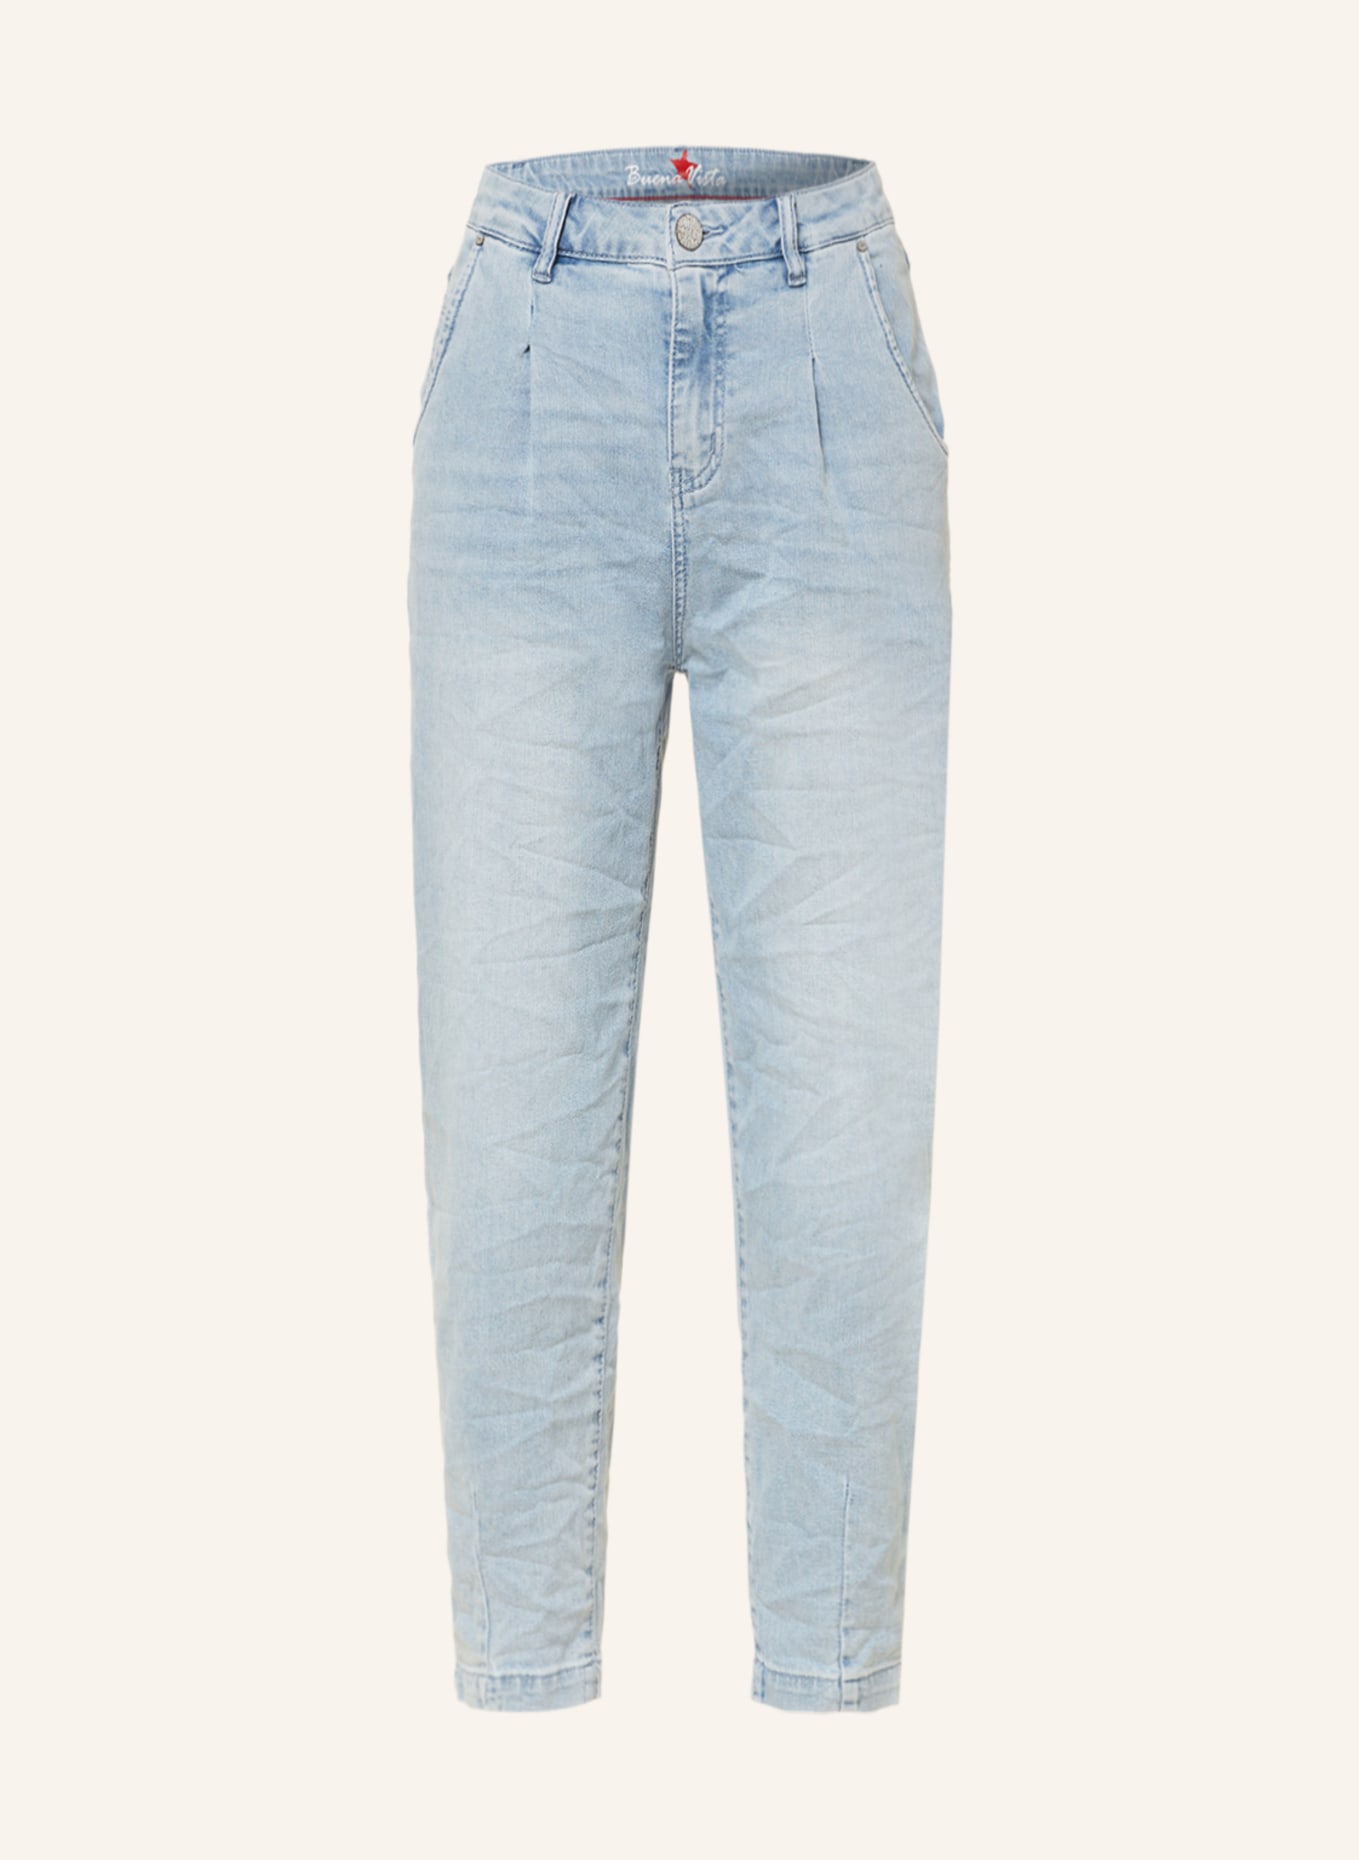 Buena Vista 7/8 jeans, Color: 8865 bleach denim (Image 1)